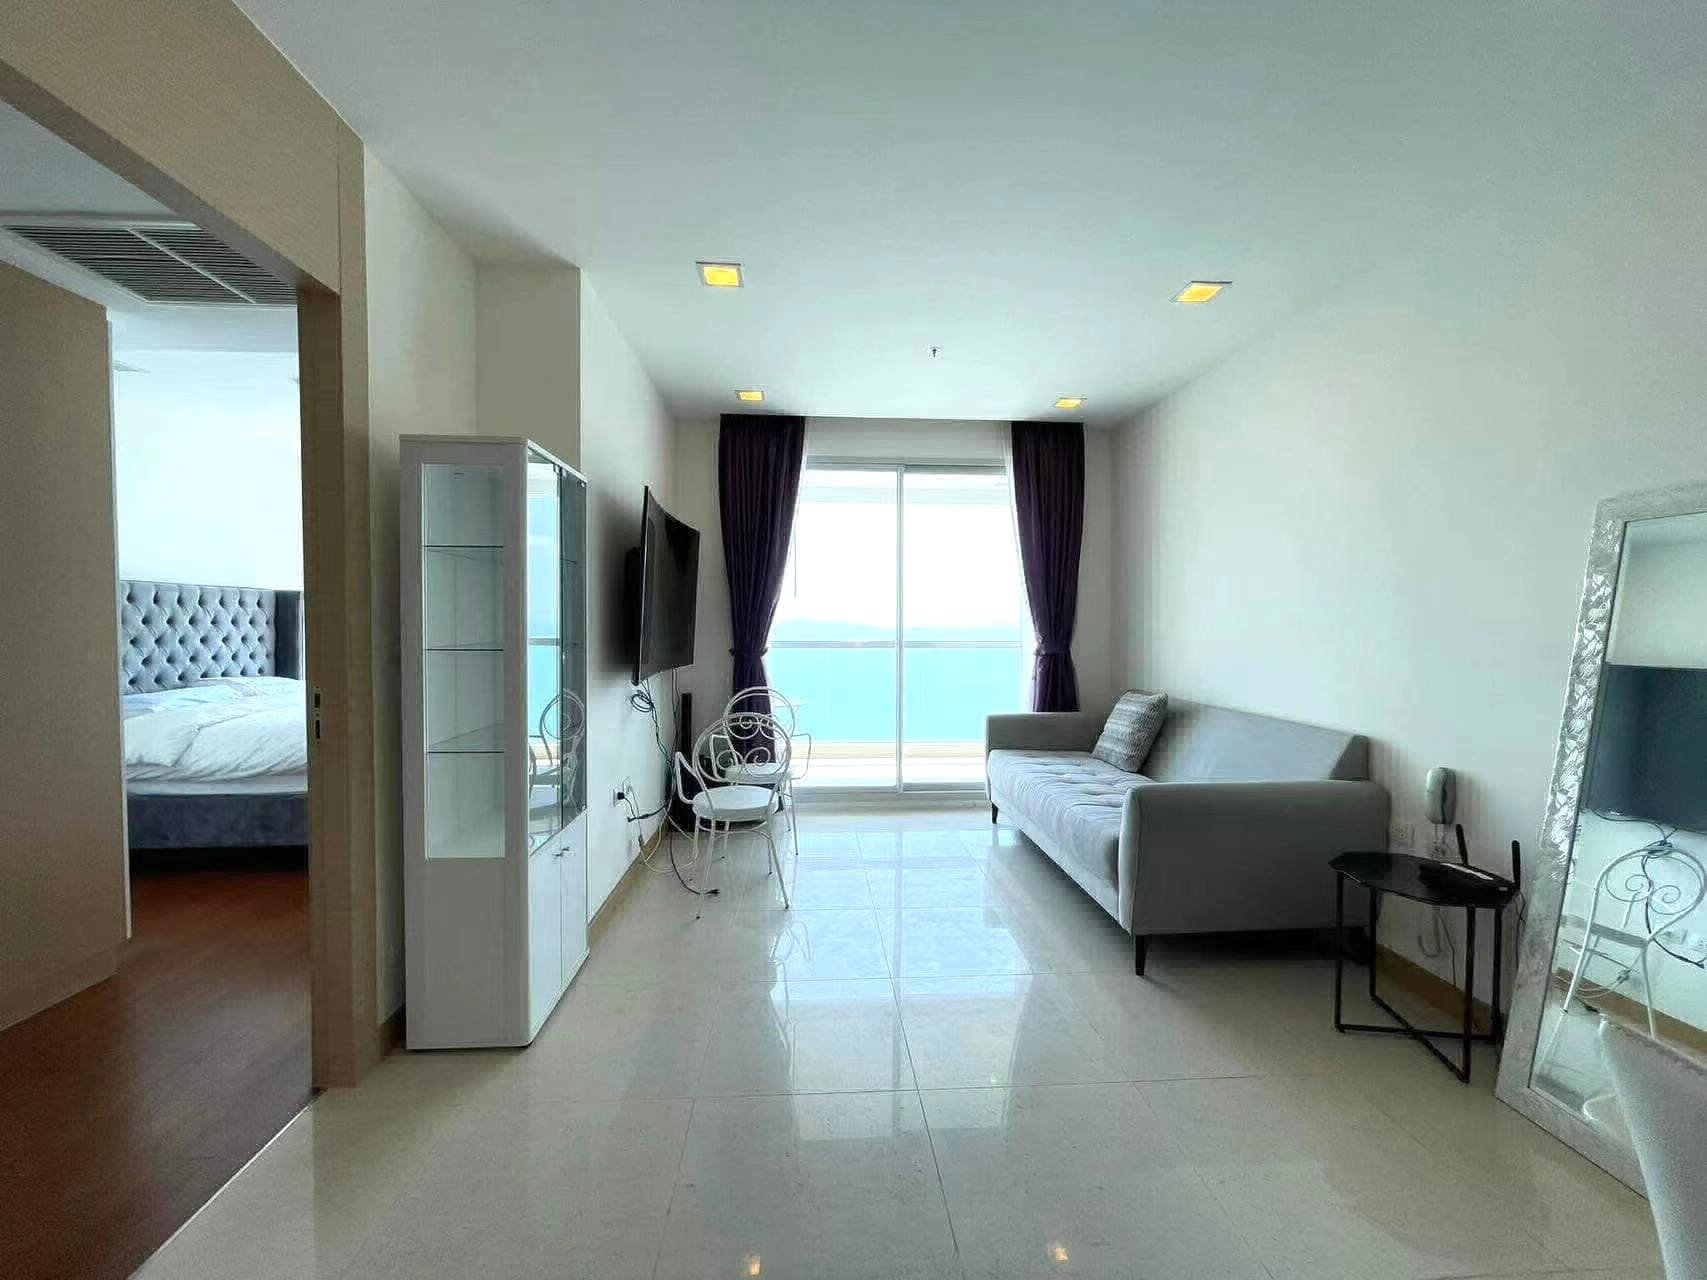 81H20｜Palm 棕榈湾，52平米1居室A31楼海景，800万泰铢急售